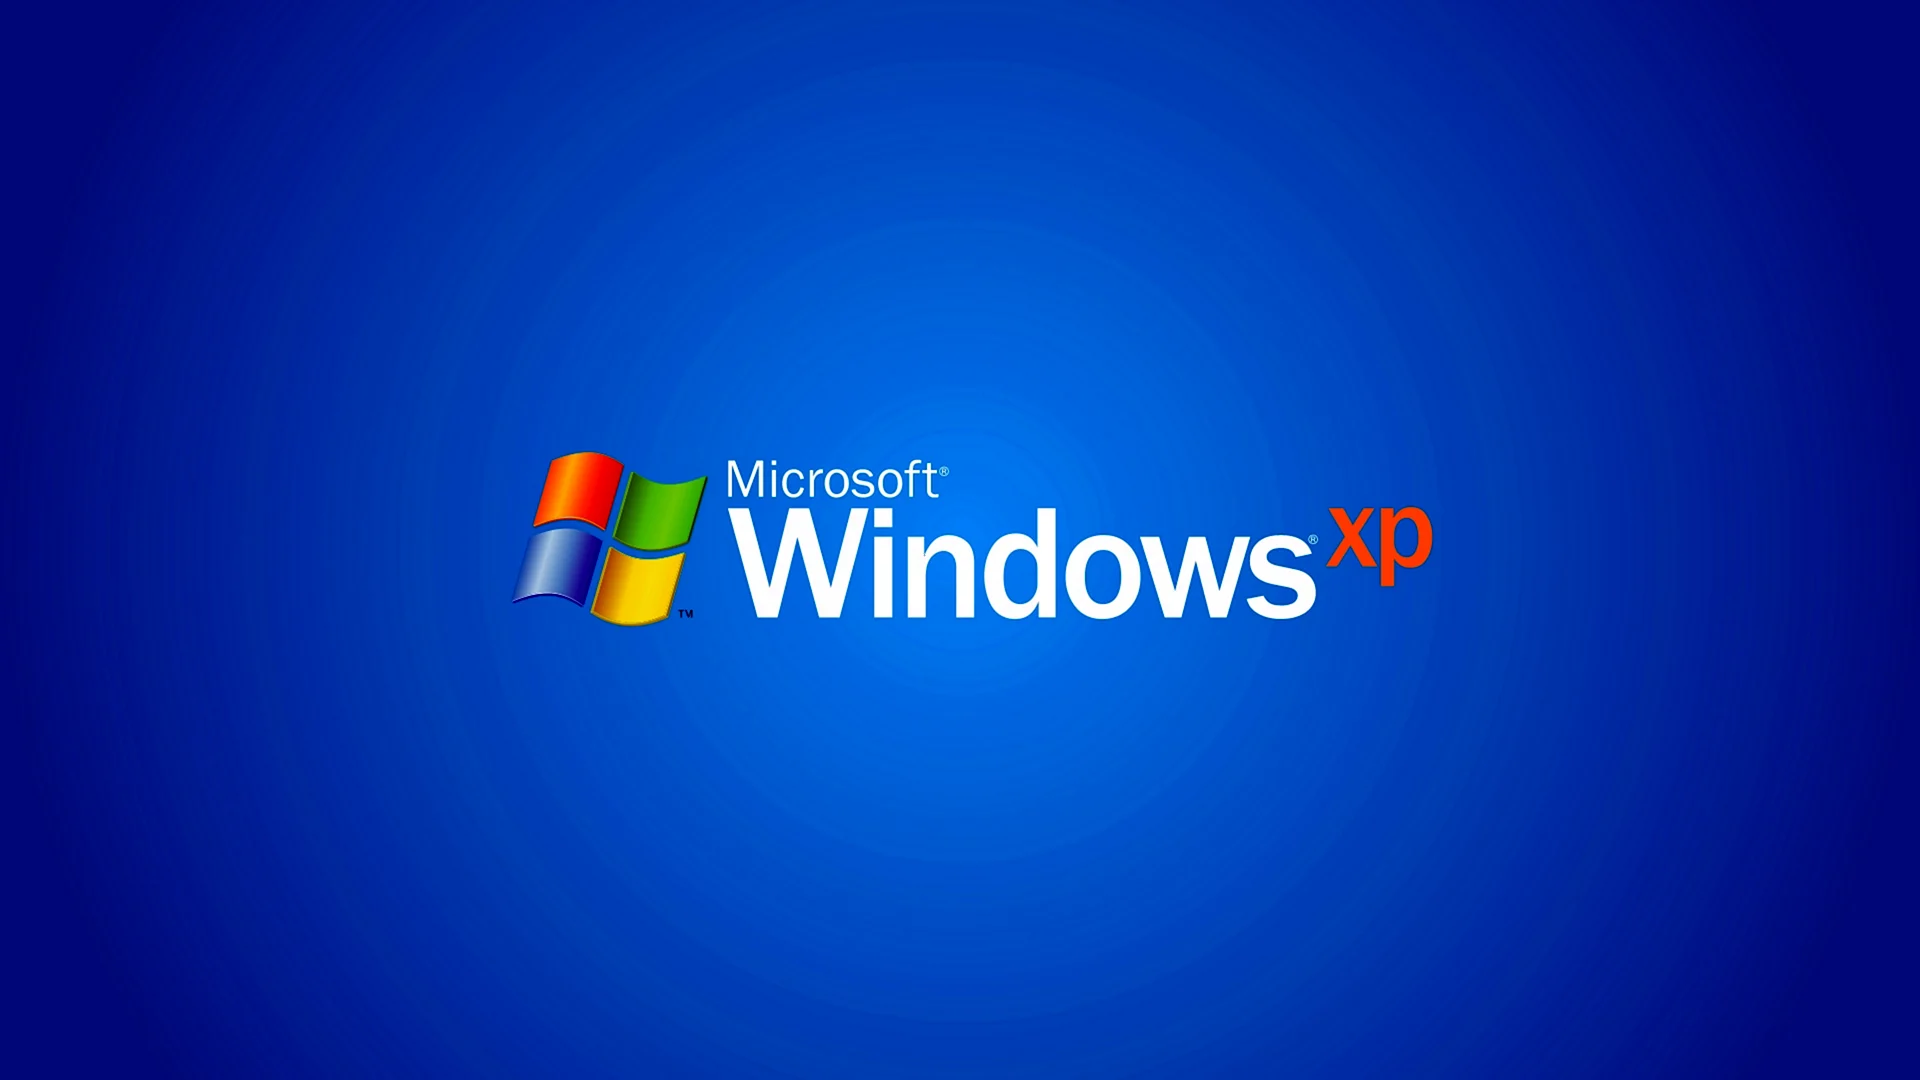 Виндовс XP